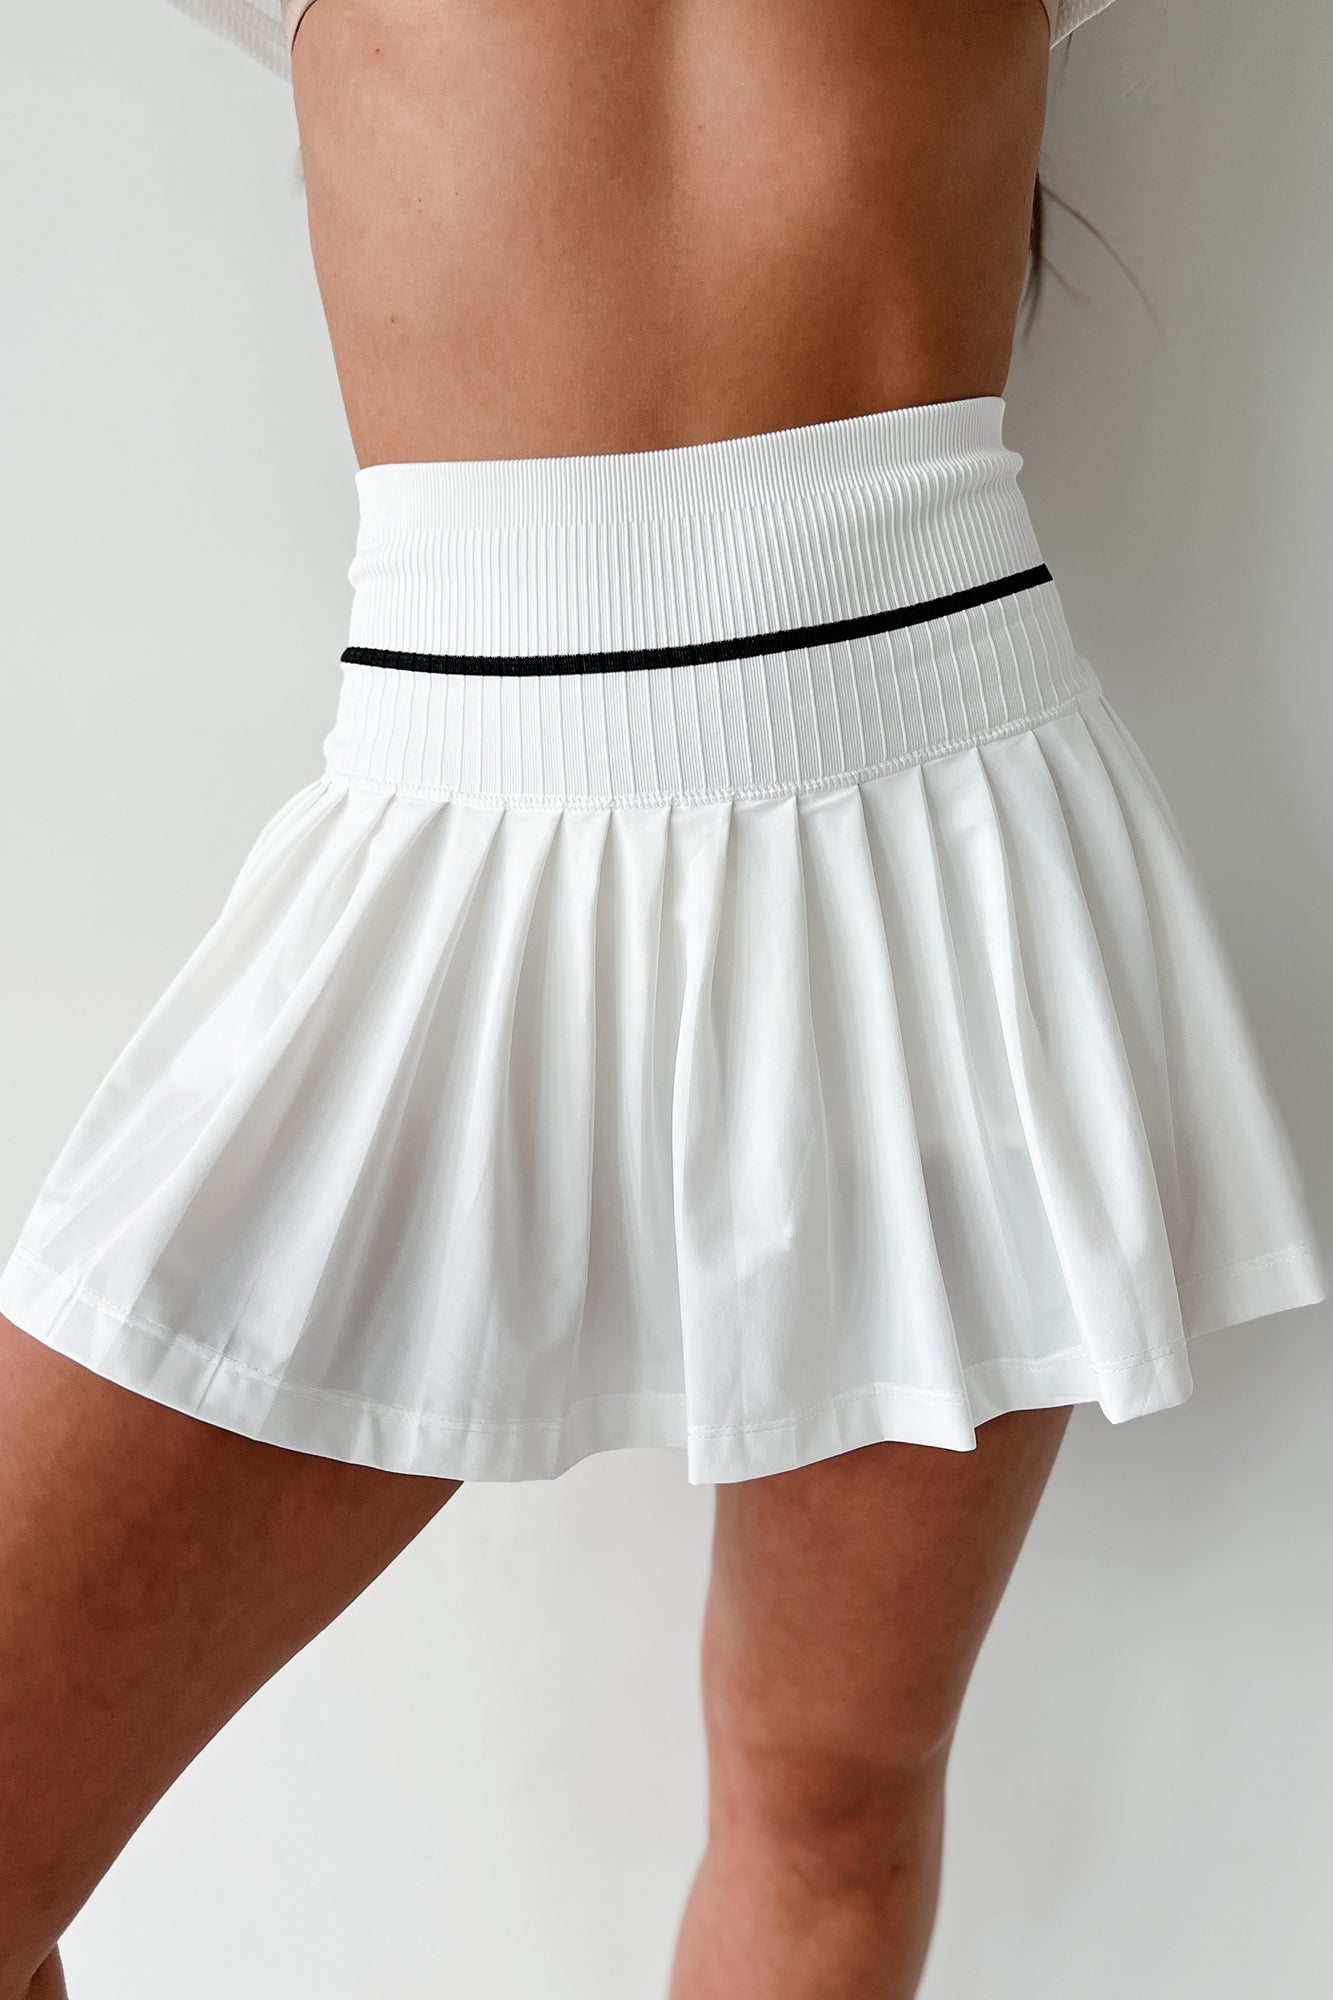 Scoring Points Retro Stripe Crop Top & Tennis Skirt Set (White/Black) - NanaMacs